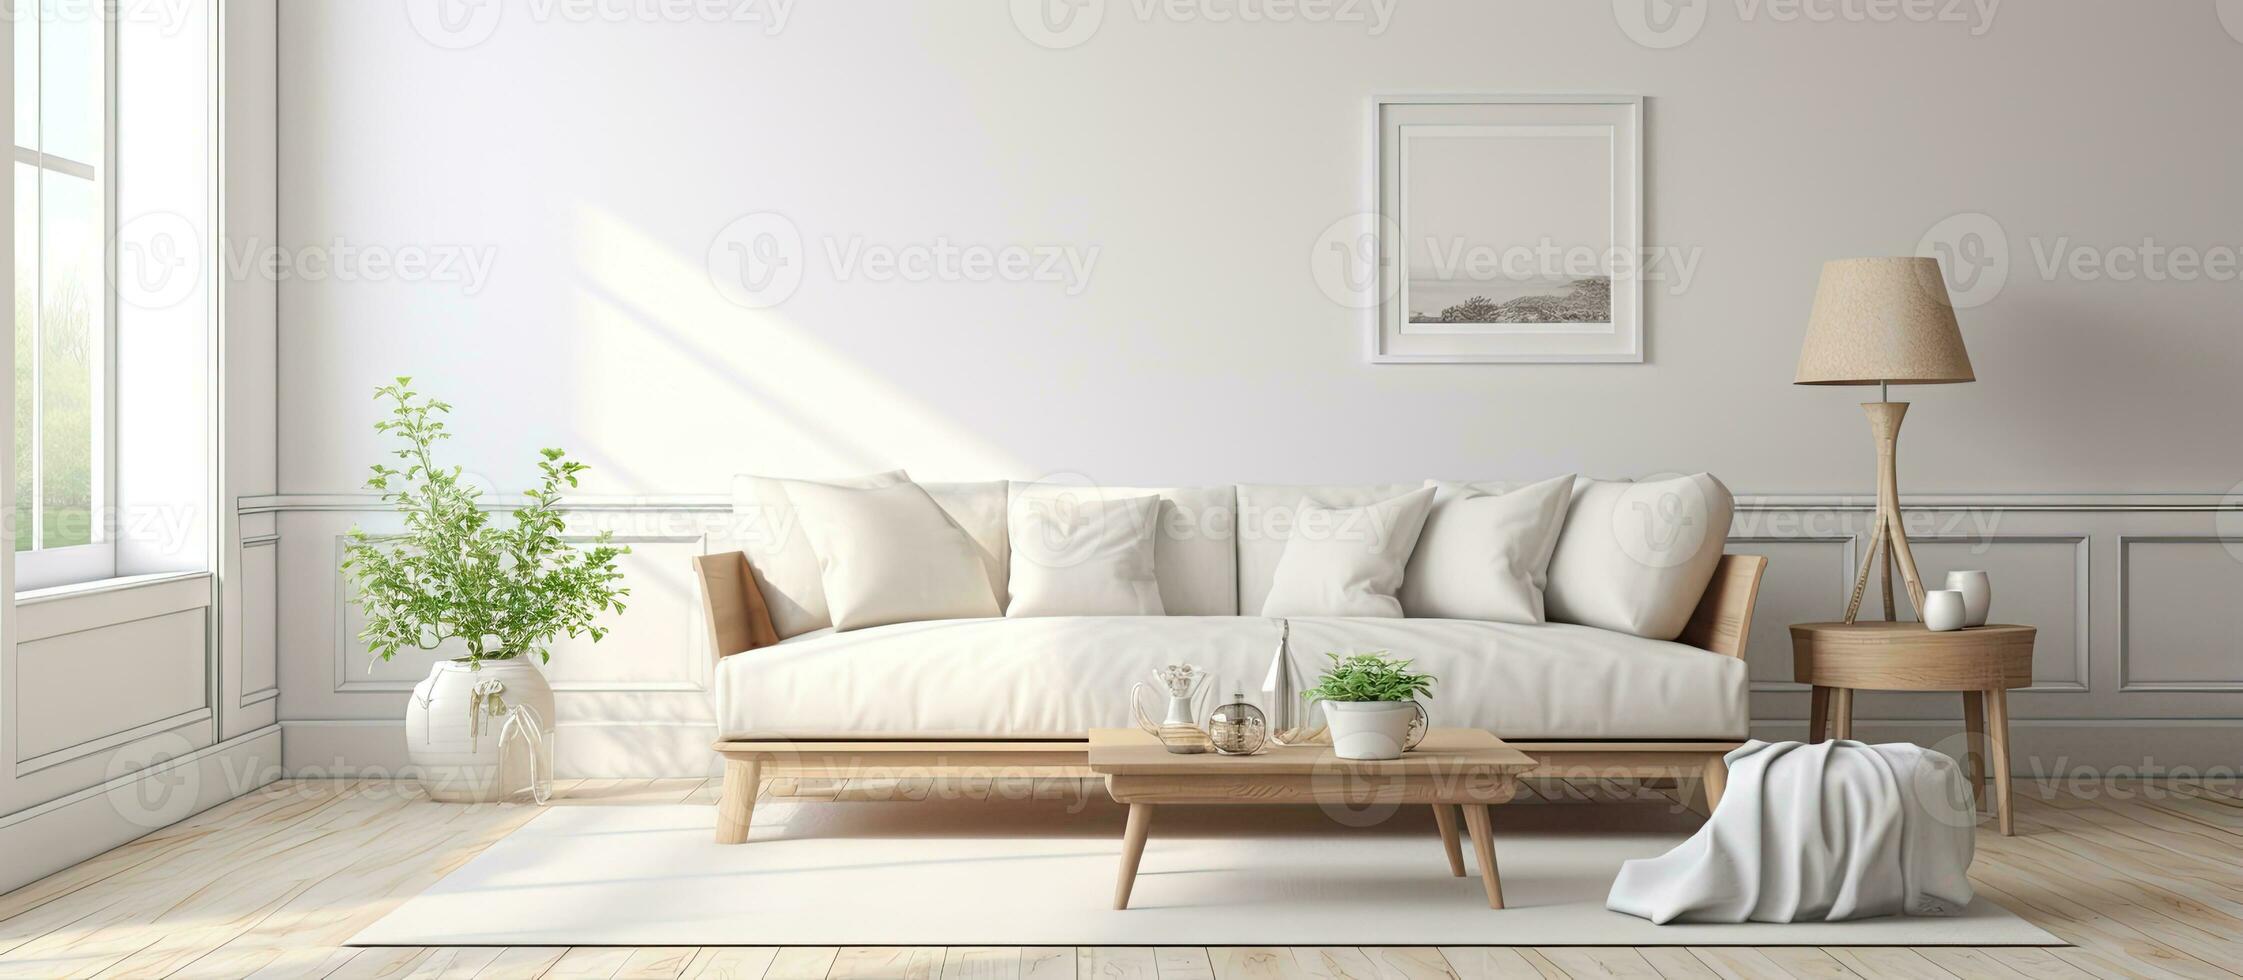 moderno residência com rendido espaçoso vivo quarto completo com sofá chá mesa decorativo pintura etc foto